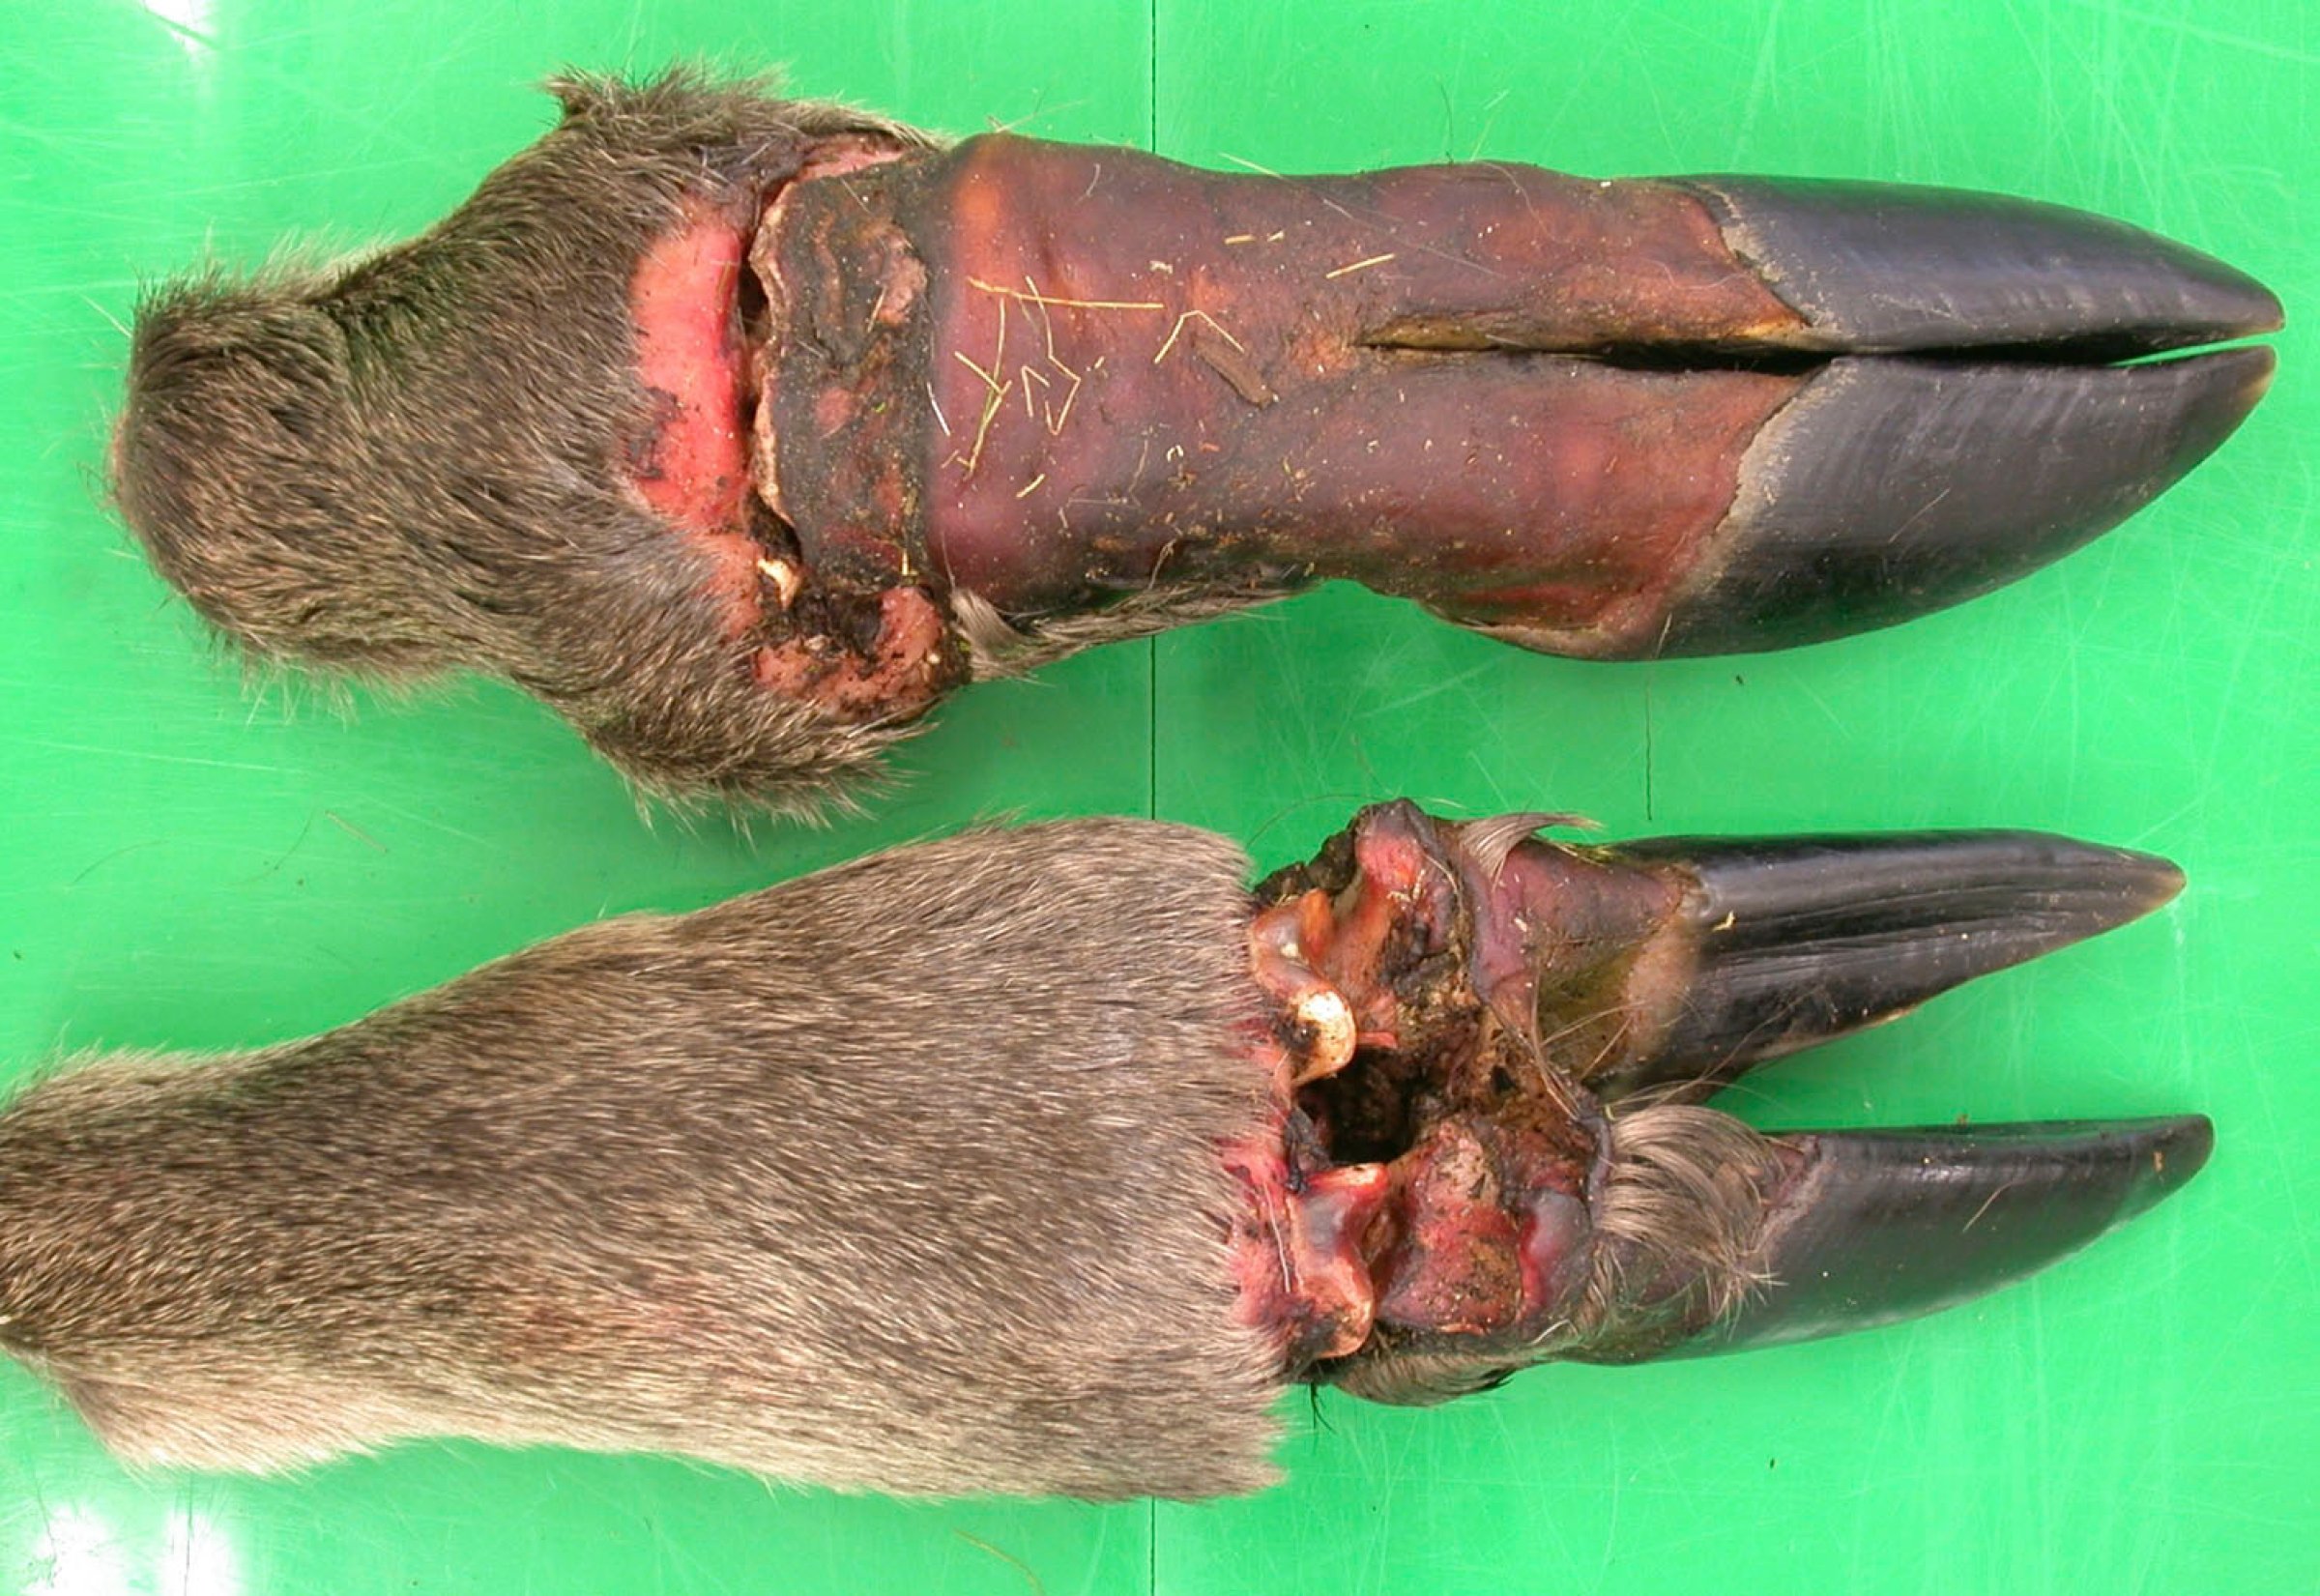 Bilde 1. Koldbrann i framben (øverst) og bakben (nederst) hos en elgkalv. Foto: Veterinærinstituttet